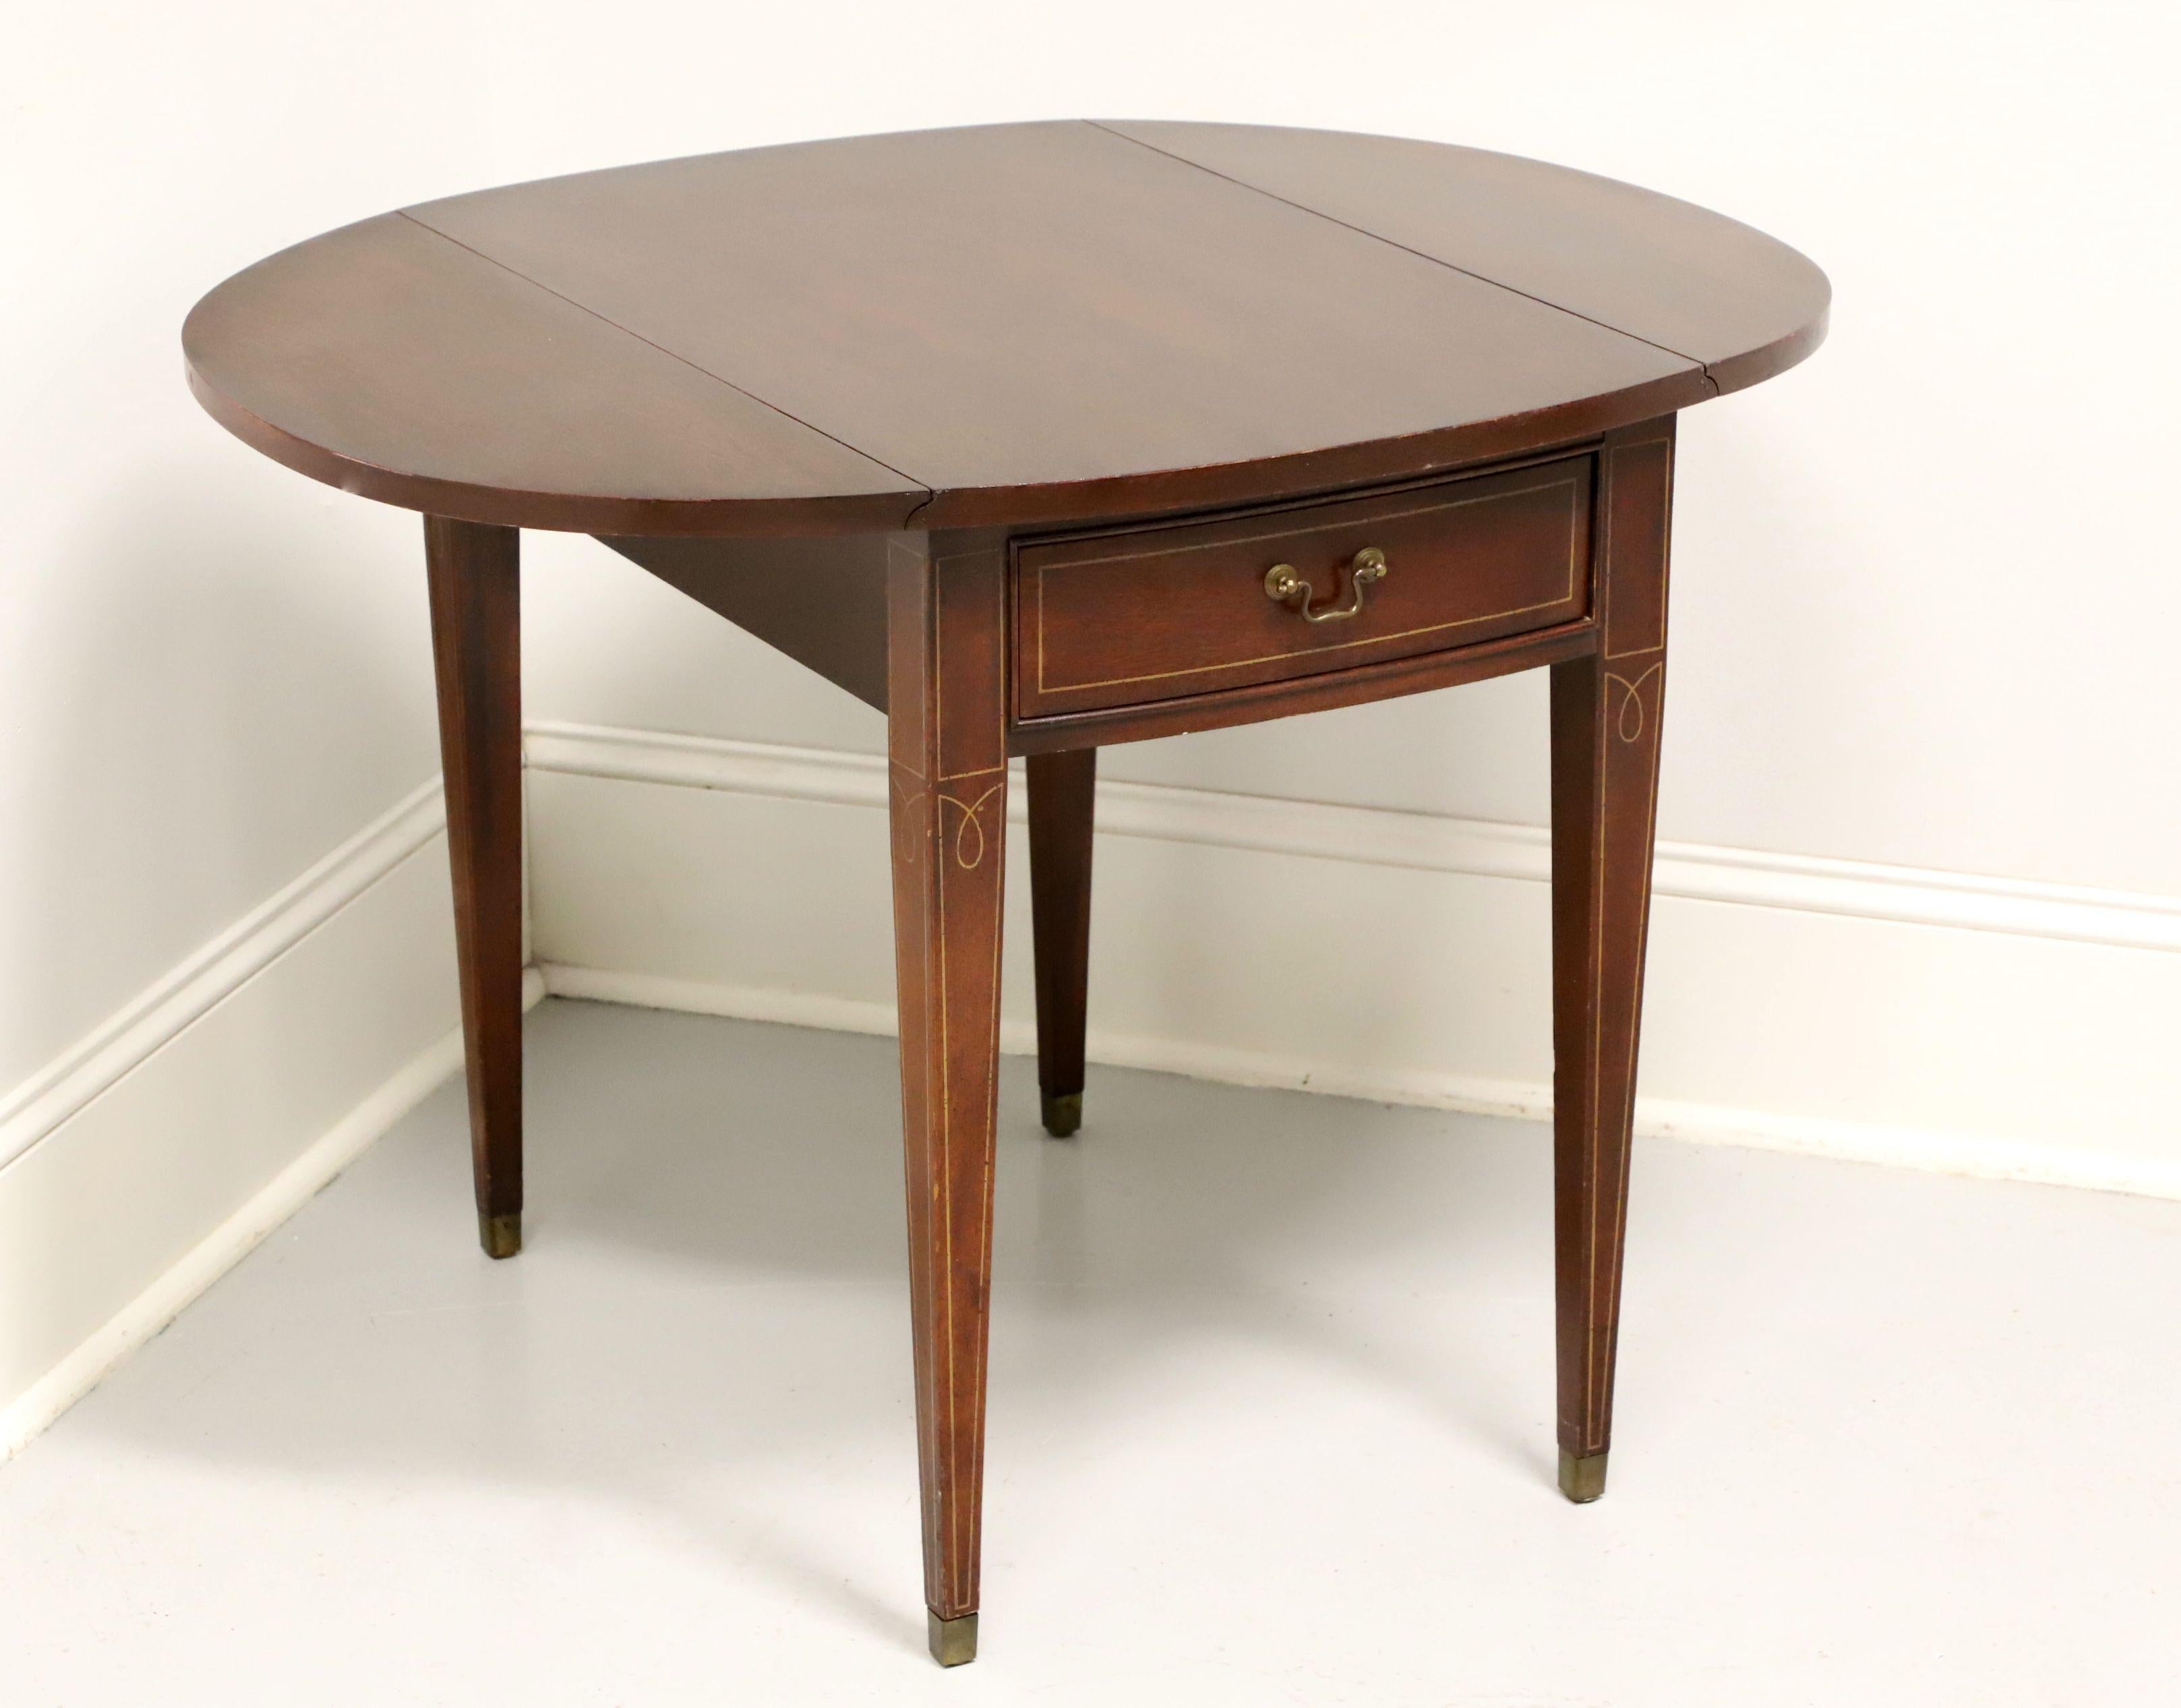 Ein Pembroke-Tisch im Hepplewhite-Stil, ohne Marke, in ähnlicher Qualität wie Drexel und Hickory Chair. Mahagoni mit Intarsien, Klappe, Messingbeschlägen, konischen geraden Beinen und Messingkappen. Mit einer Schublade mit